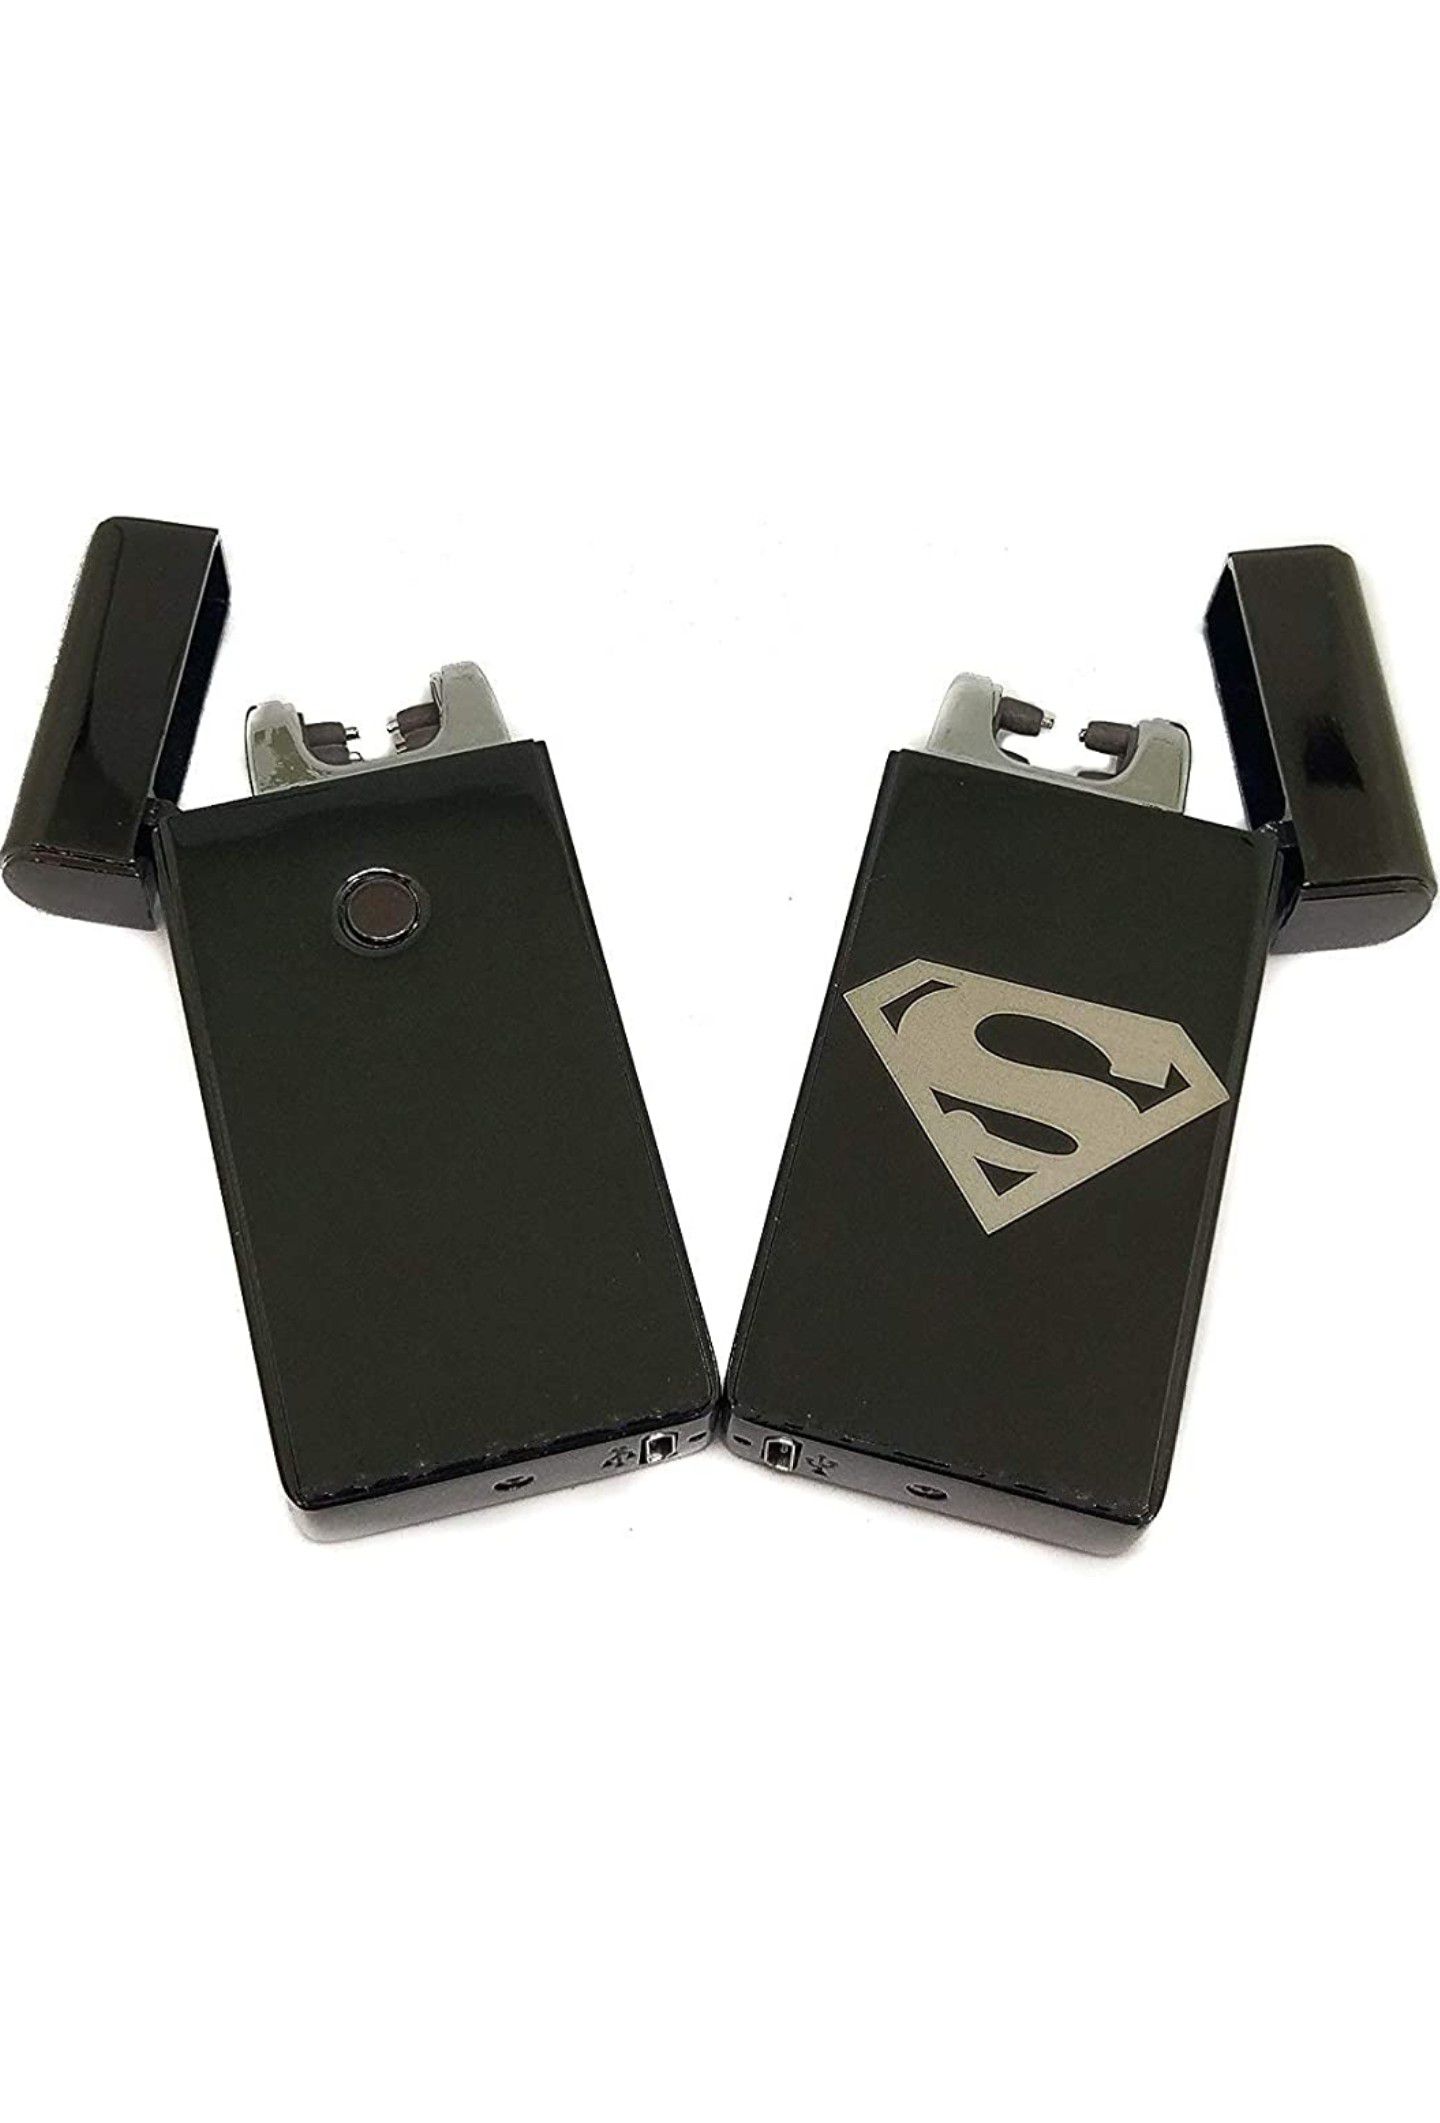 Superman Plasma Windproof USB Lighter